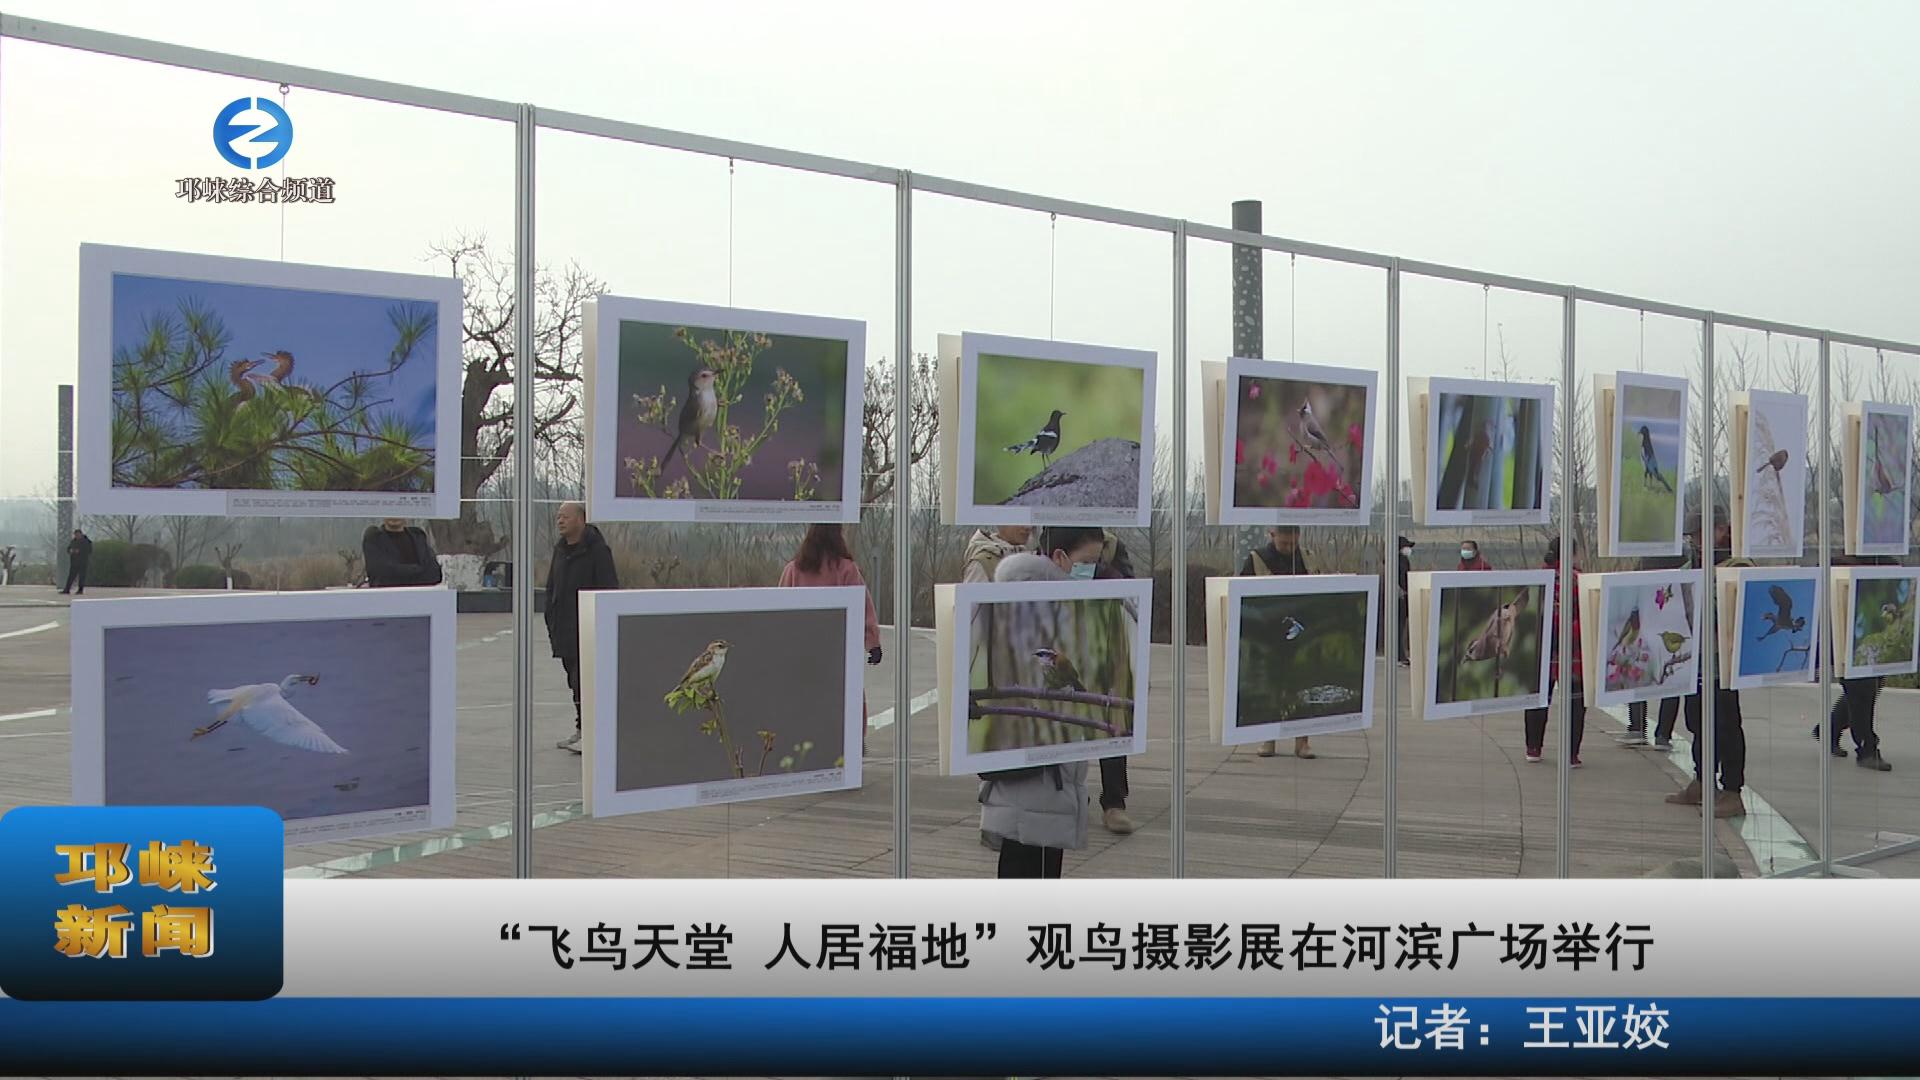 【20230128】“飞鸟天堂 人居福地”观鸟摄影展在河滨广场举行